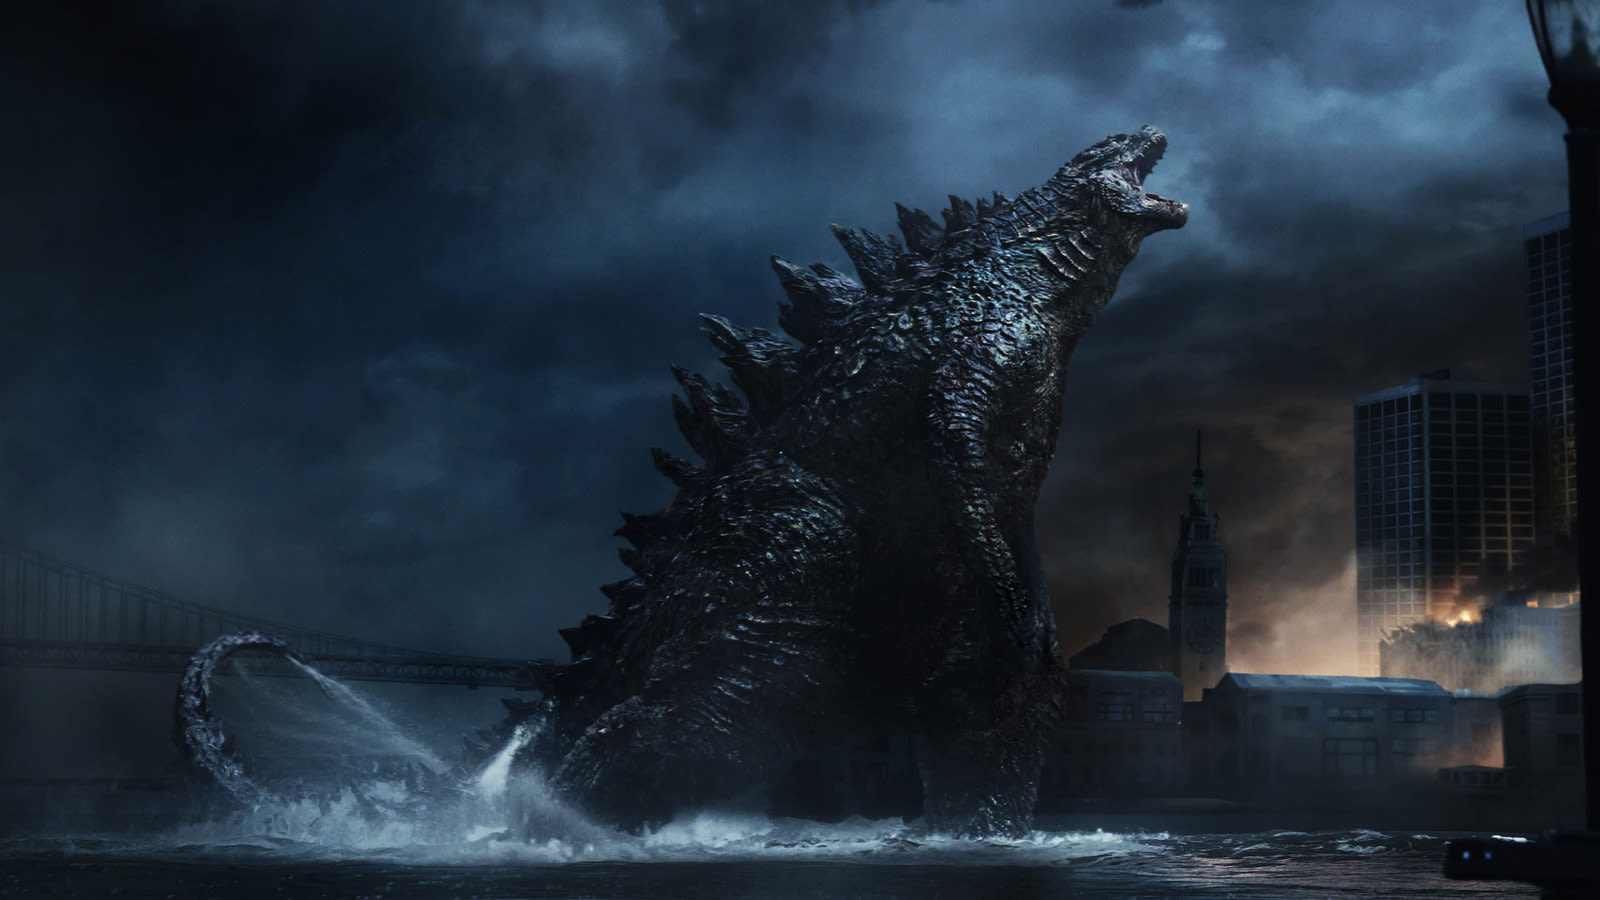 The Original Roar Of Gareth Edwards' Godzilla Was Inaudible To The Human Ear - SlashFilm